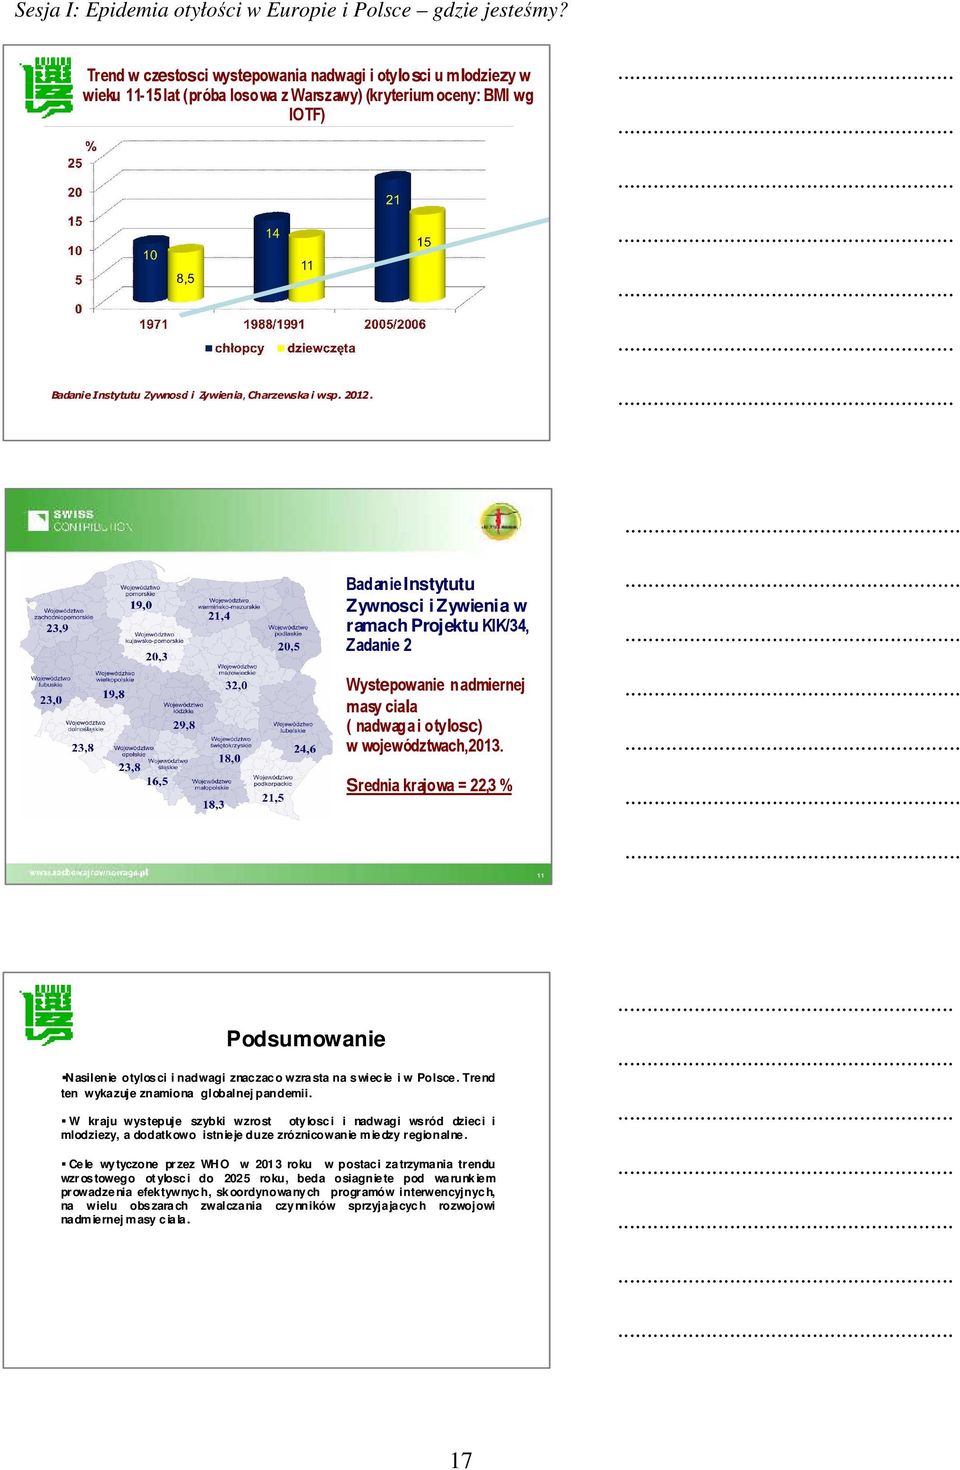 Badanie Instytutu Zywnosci i Zywienia w ramach Projektu KIK/34, Zadanie 2 Wystepowanie nadmiernej masy ciala ( nadwaga i otylosc) w województwach,2013.